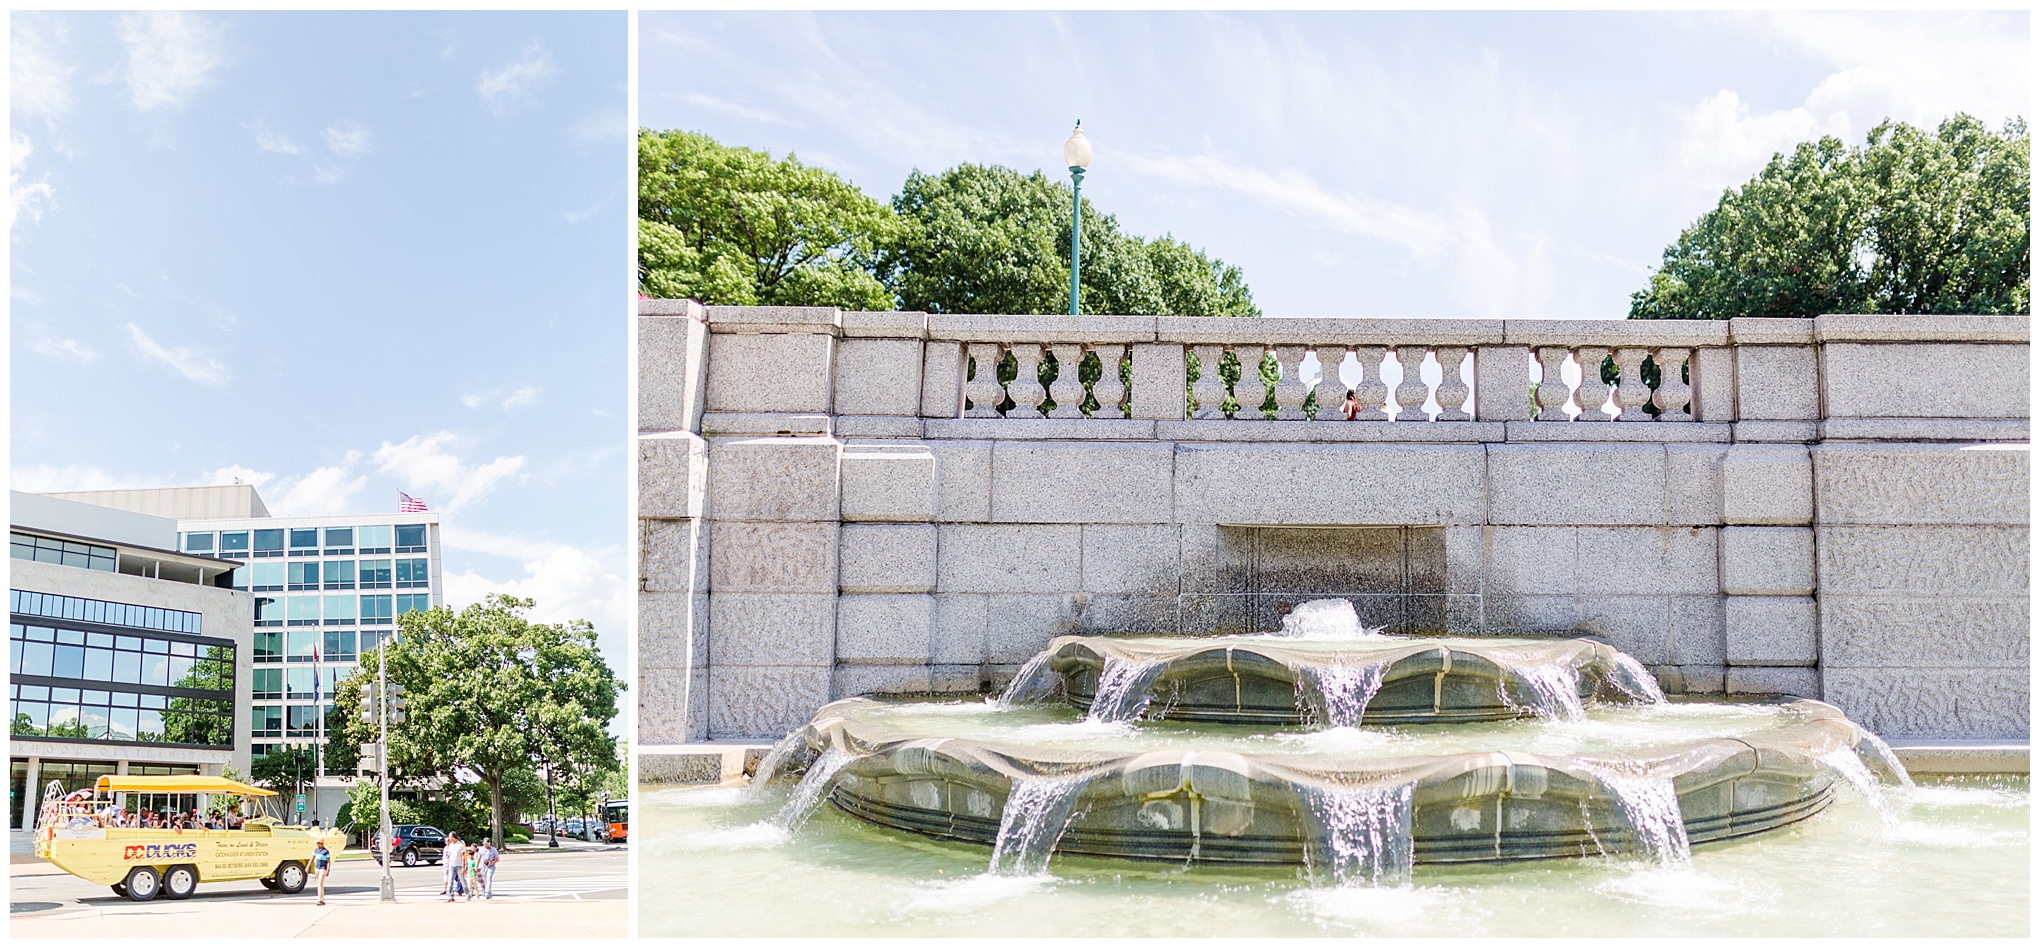 D.C. photo shoot spots, Capitol Hill, Lower Senate Park, fountain, Capitol building